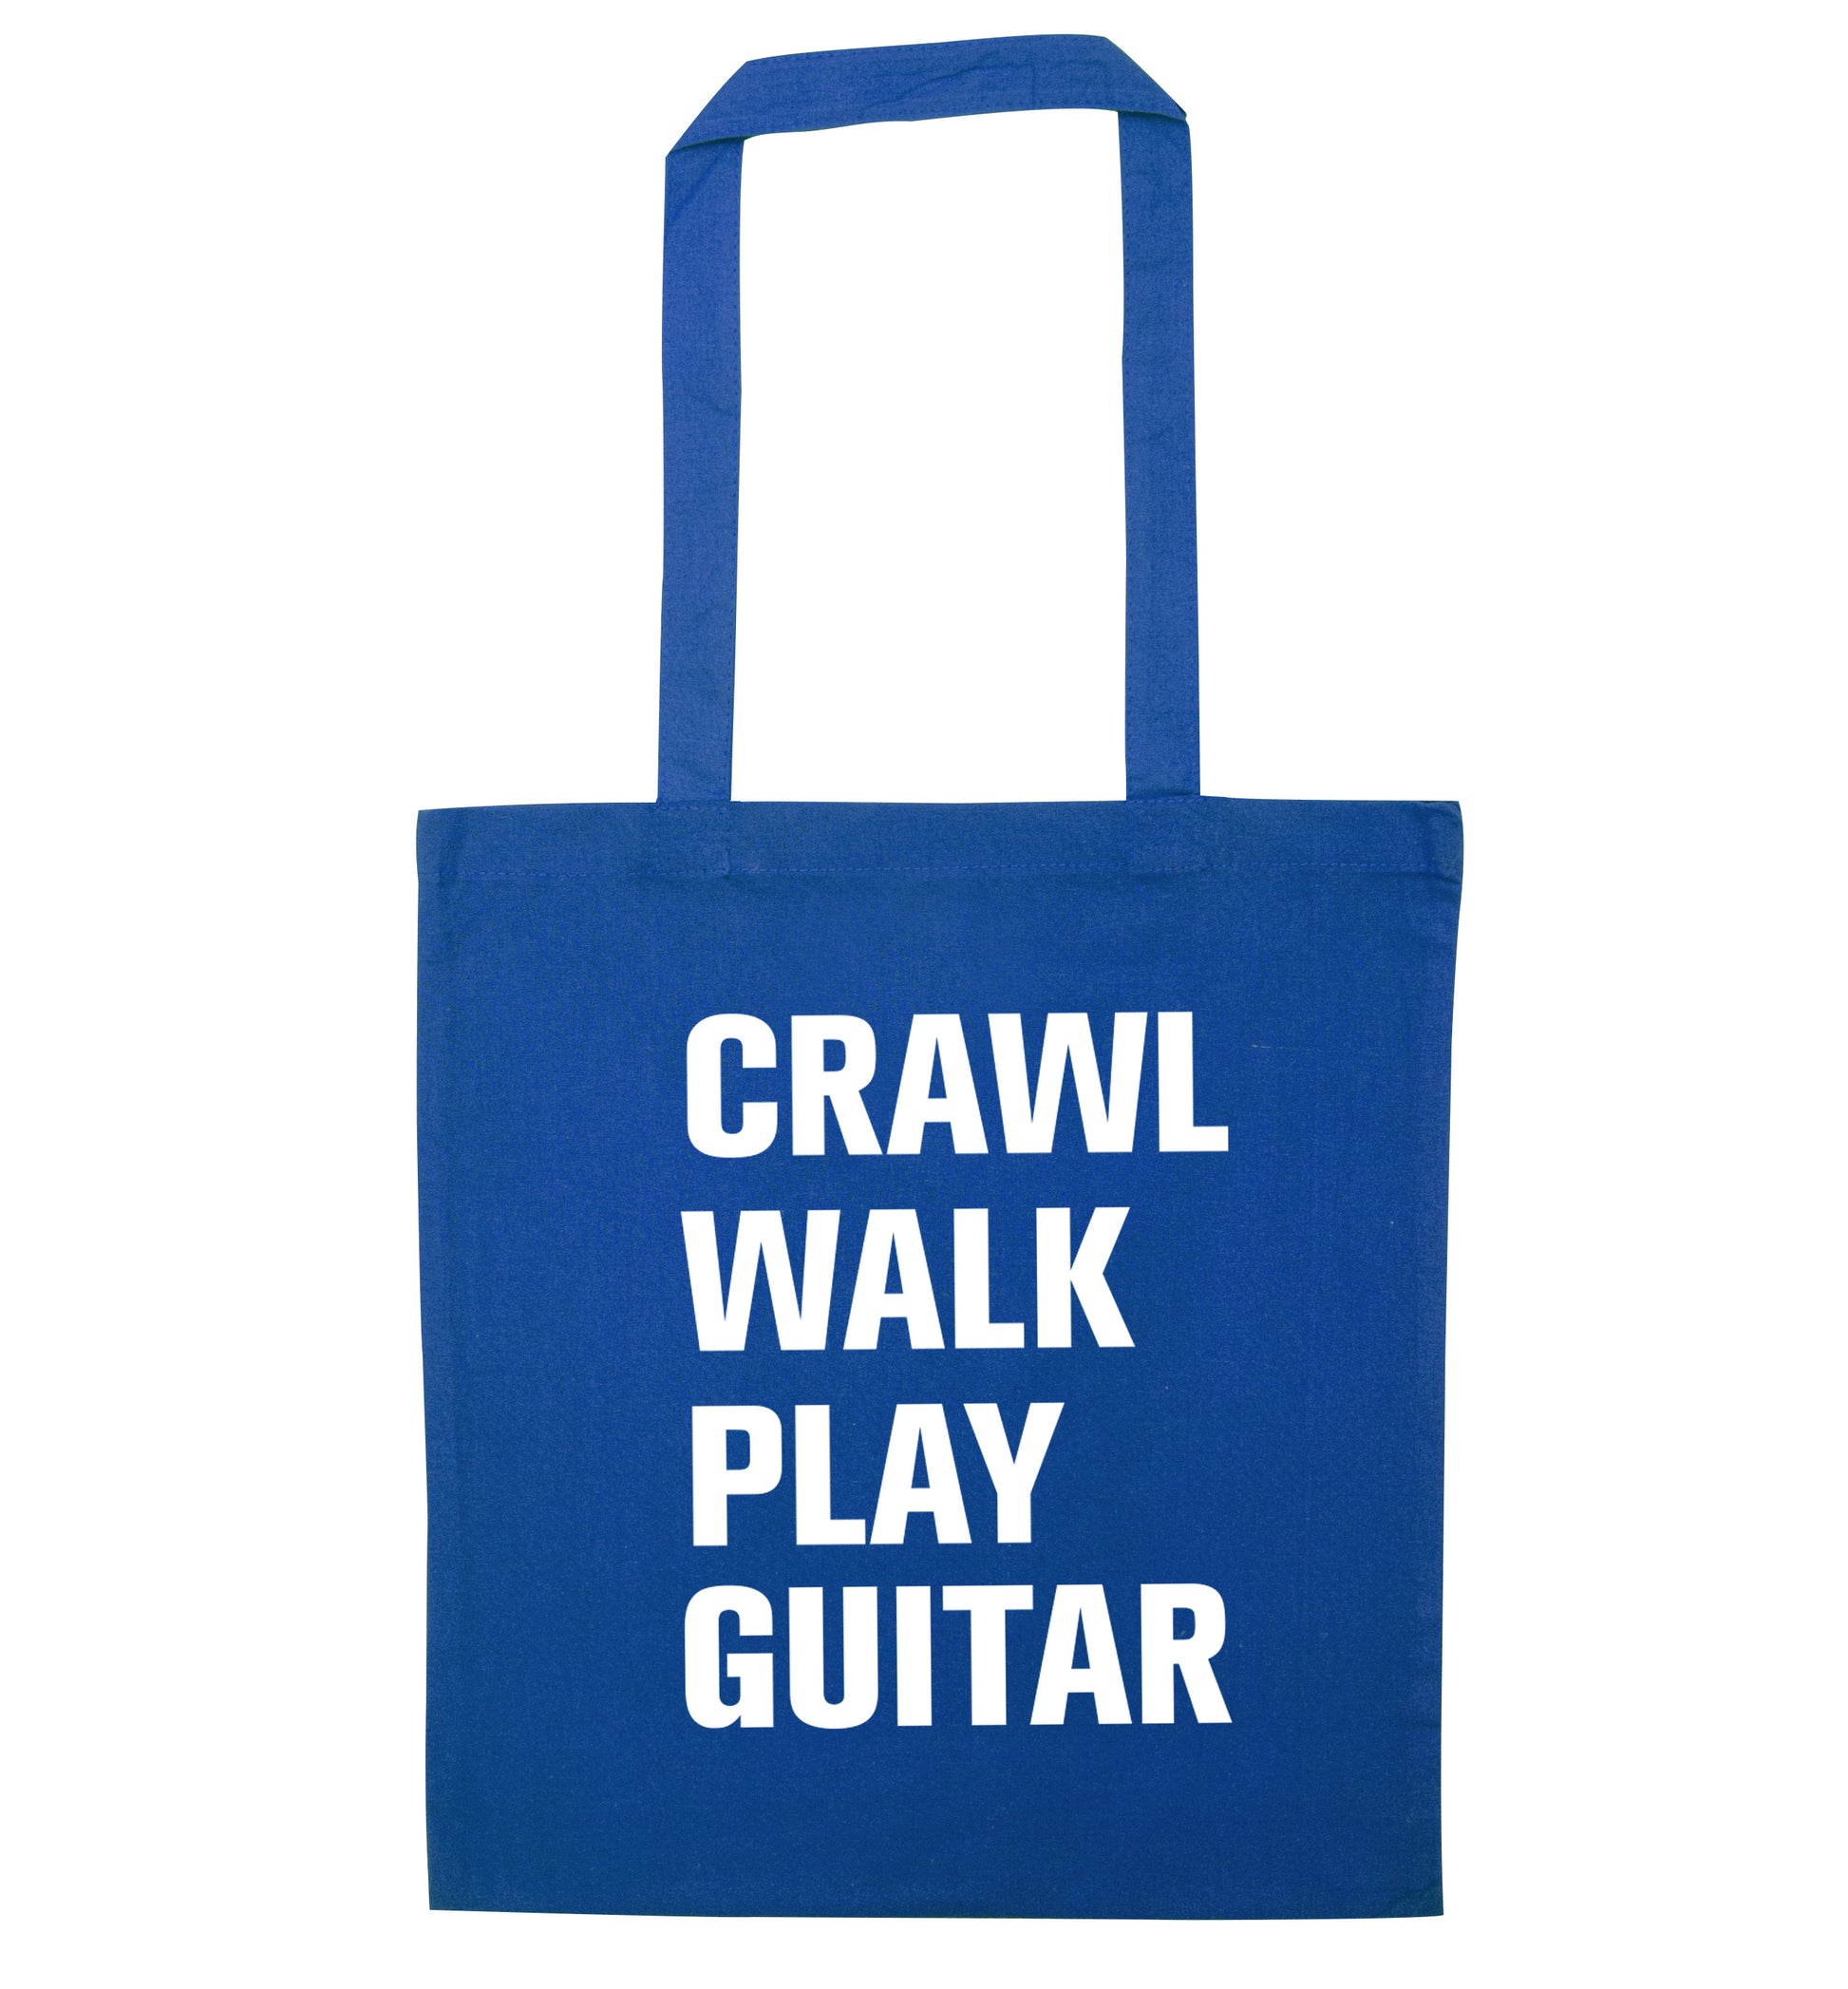 Crawl walk play guitar blue tote bag